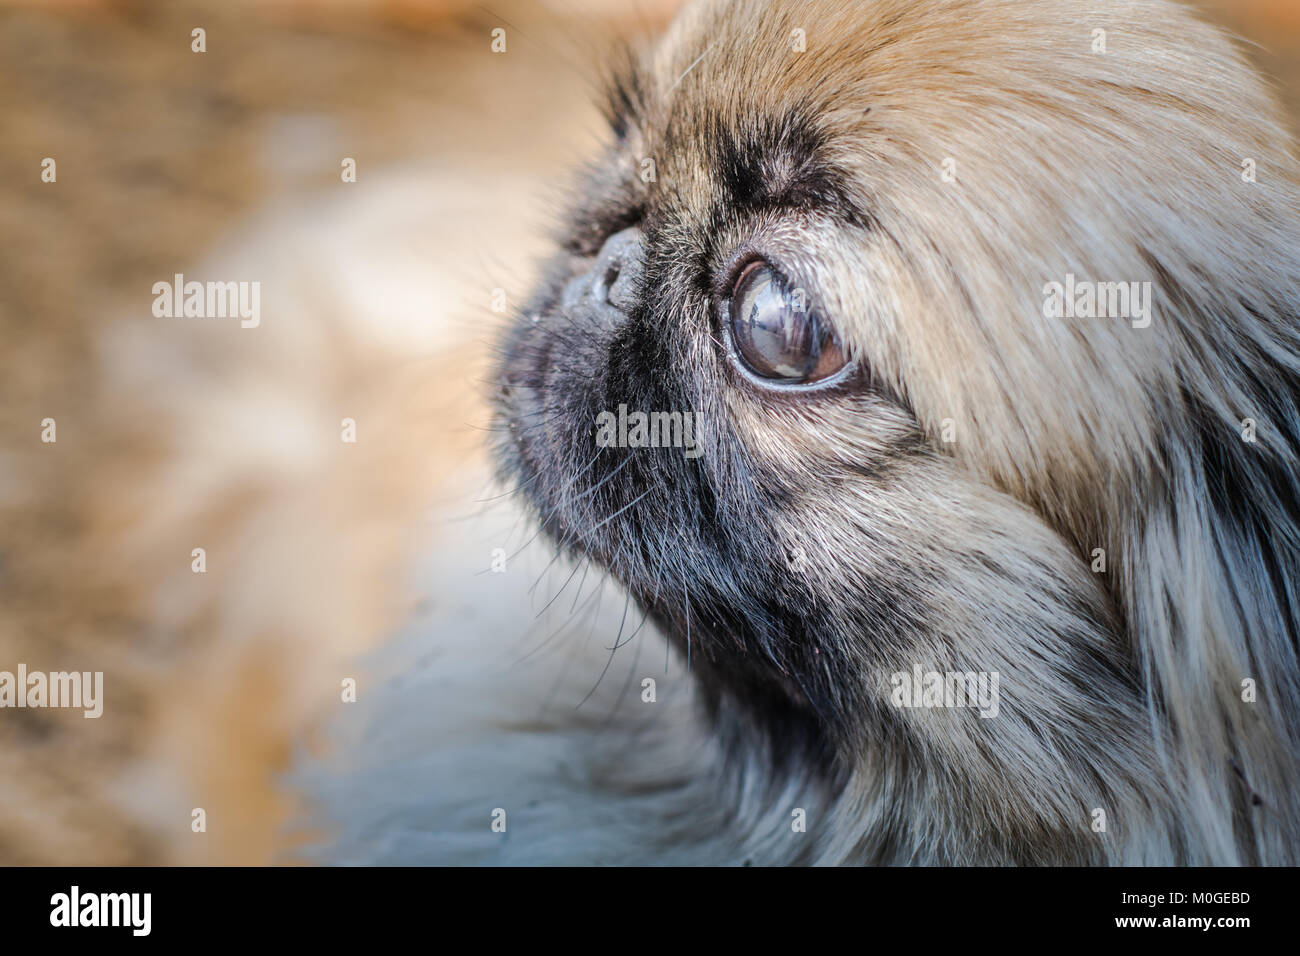 Closeup Schuss pekingese oder Löwe Hund, eine uralte Rasse Hund Spielzeug  aus China. Auf der linken Seite Stockfotografie - Alamy